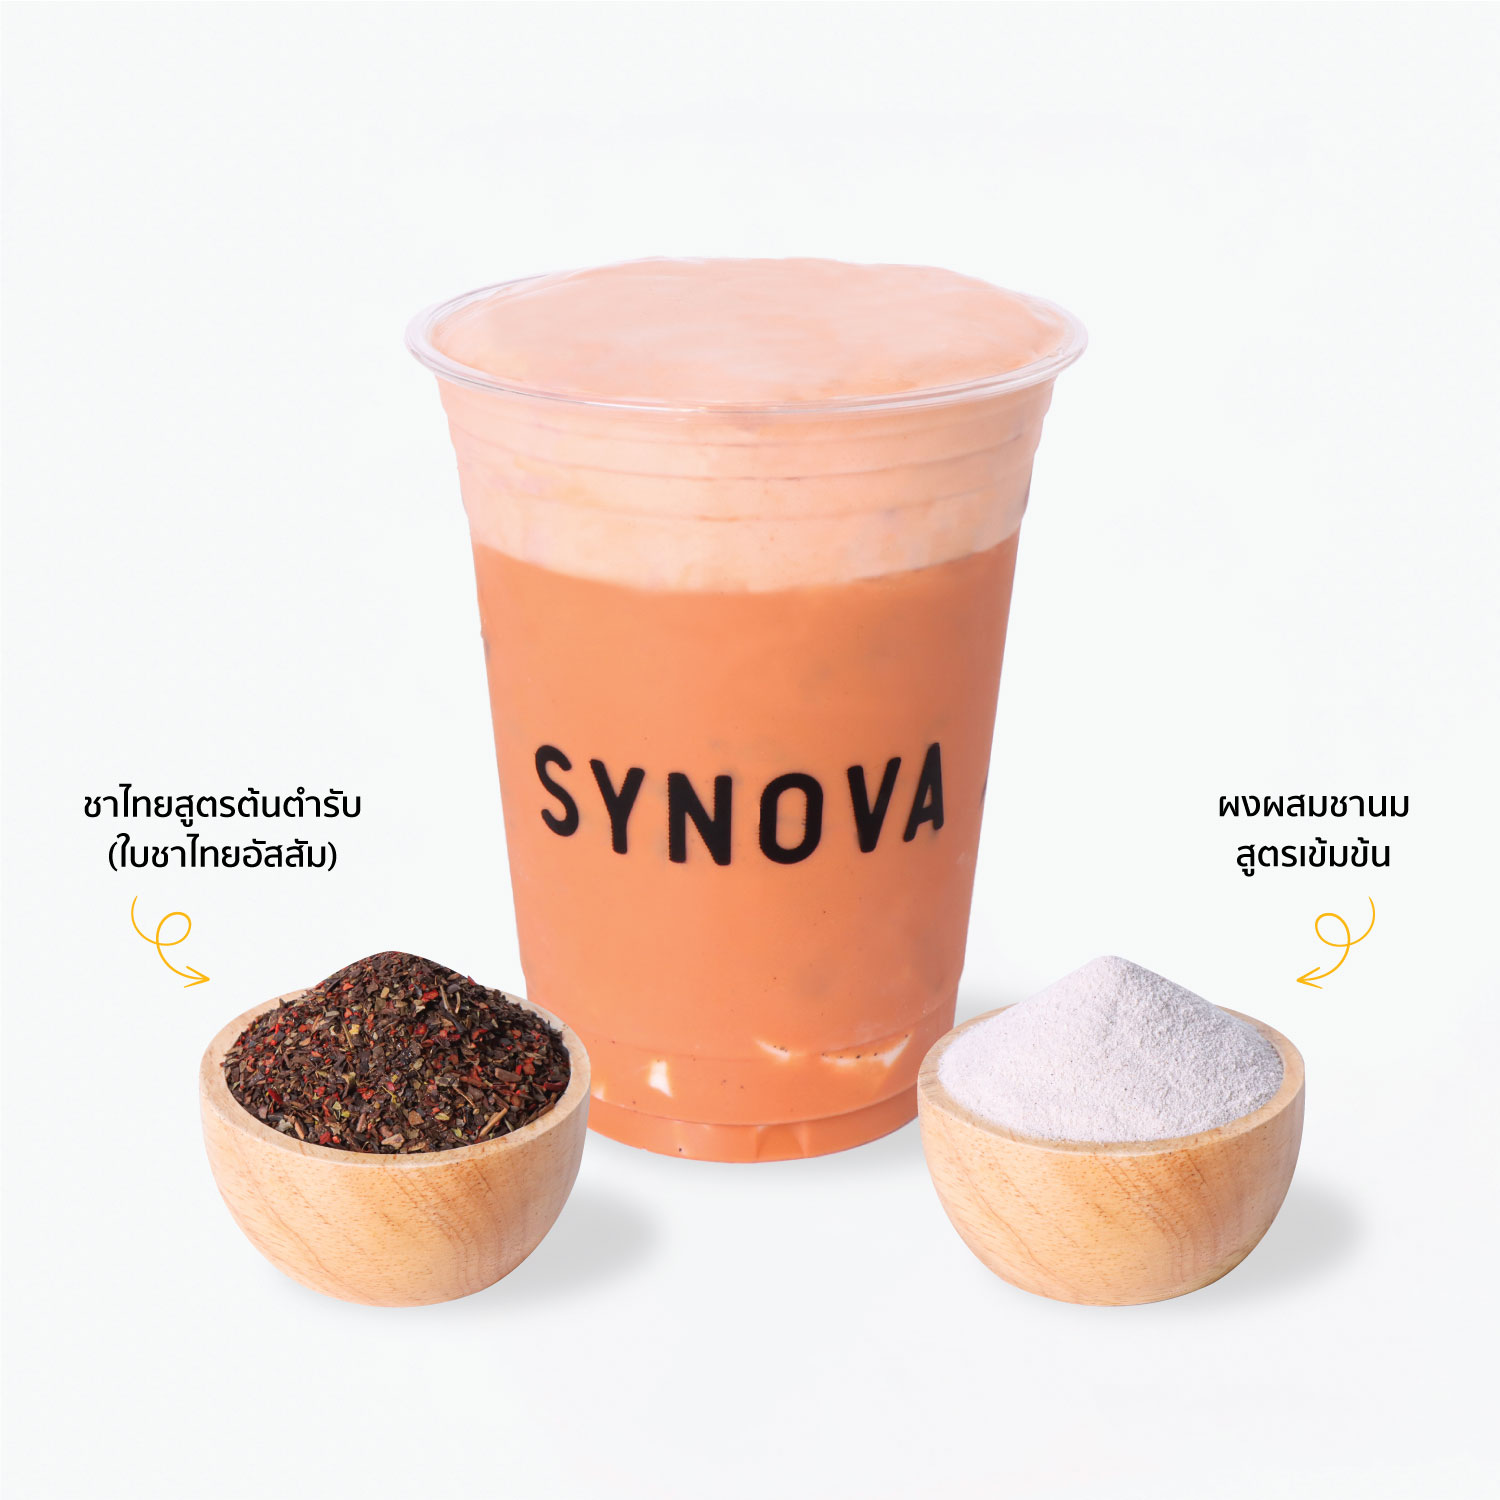 ผงเครื่องดื่มปรุงสำเร็จ : SYNOVA เซ็ตชาไทยเข้มข้น (ถุง)